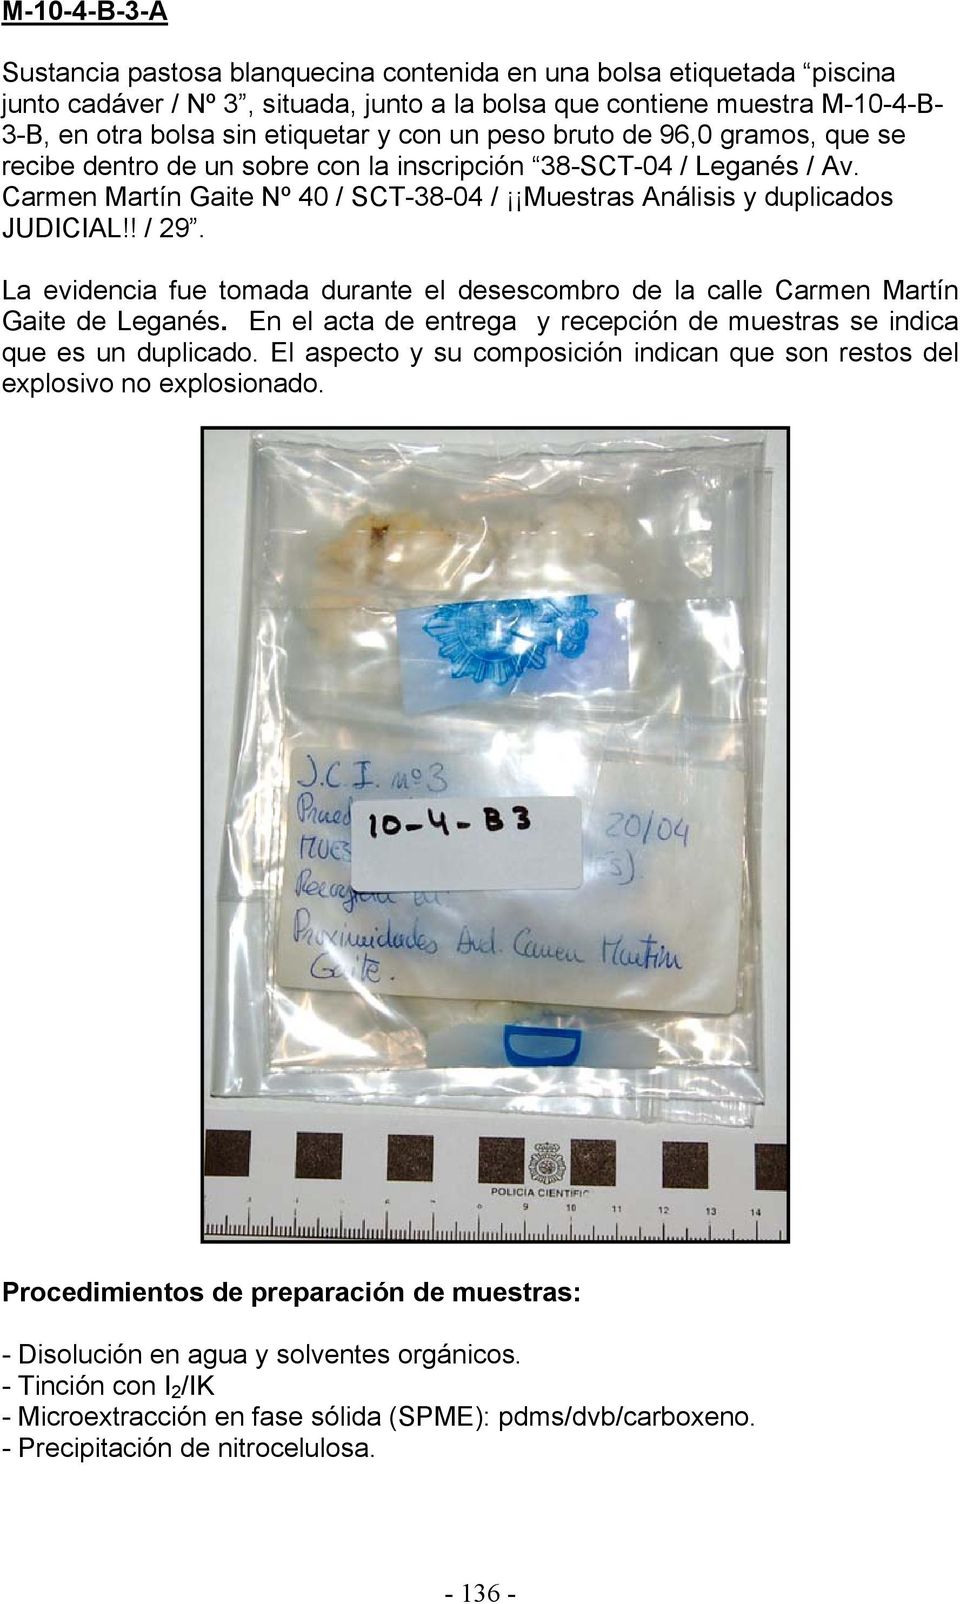 La evidencia fue tomada durante el desescombro de la calle Carmen Martín Gaite de Leganés. En el acta de entrega y recepción de muestras se indica que es un duplicado.